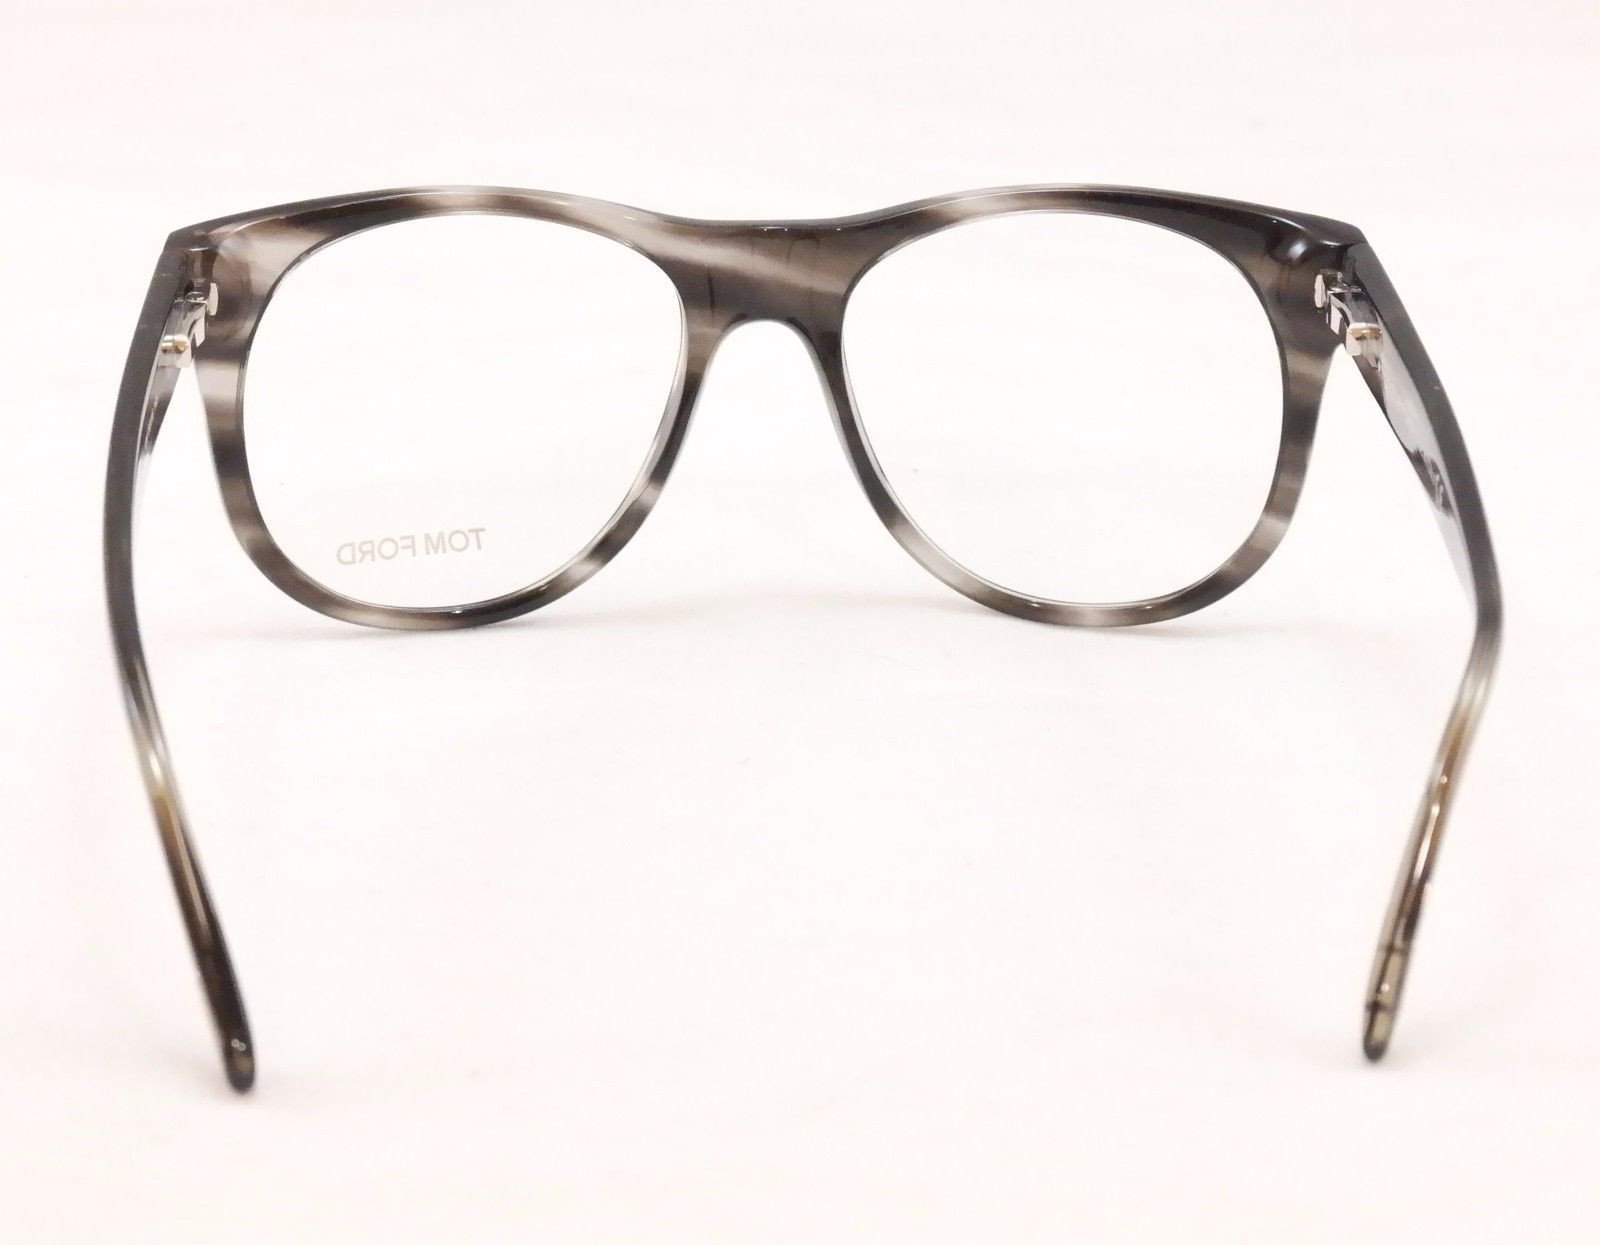 Tom Ford Eyeglasses TF5314 020 Black Tortoise Plastic Italy Made Frame 55-18-145 - Frame Bay